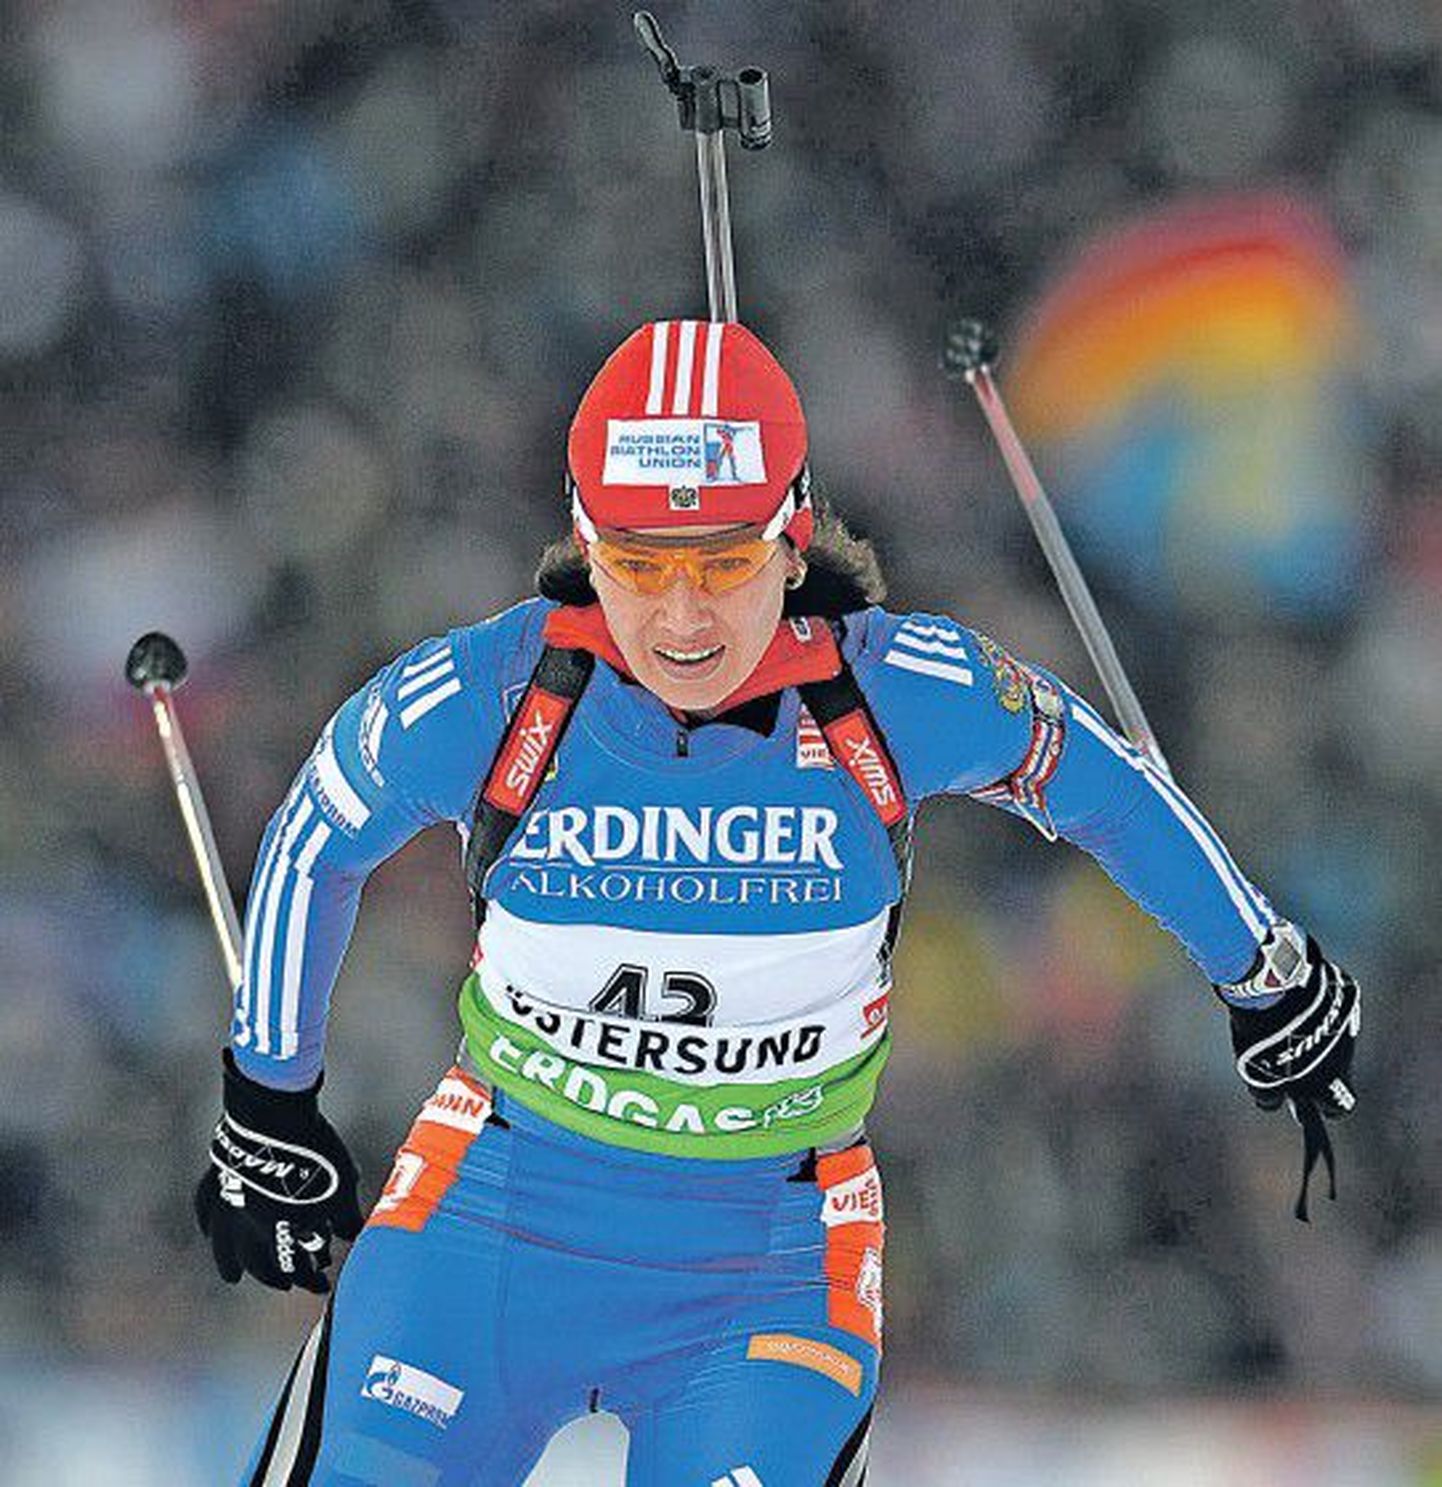 Российская биатлонистка Ольга Медведцева показала второй результат на этапе КМ Эстерсунде. Не допустив ни одного промаха, она уступила 6,8 секунды норвежке Туре Бергер.